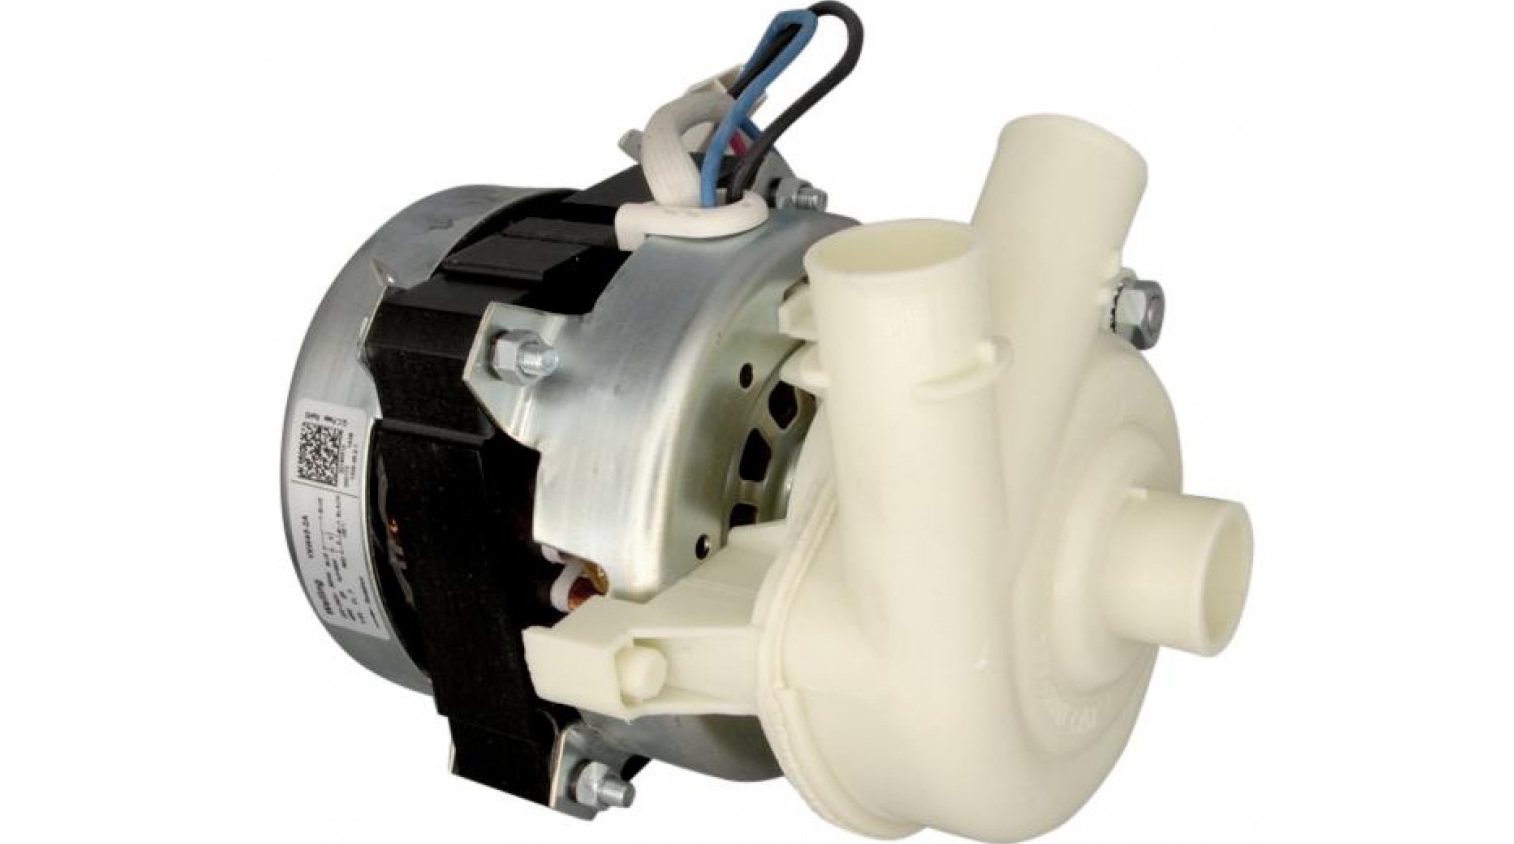 Hotpoint Ariston dishwasher circulation pump